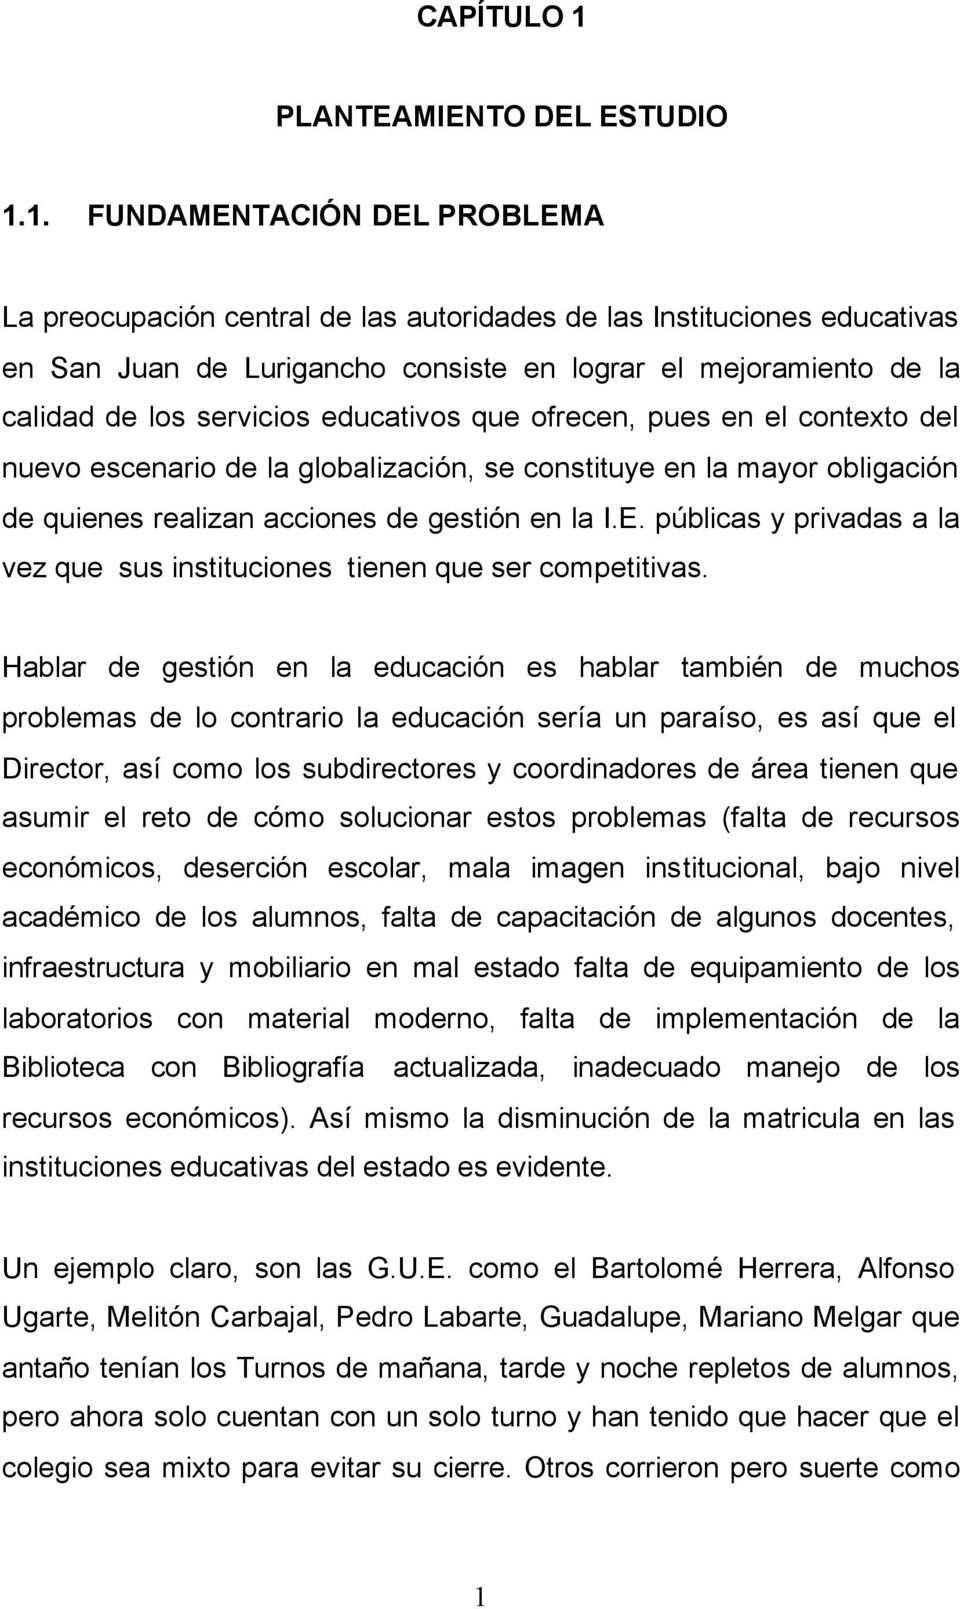 1. FUNDAMENTACIÓN DEL PROBLEMA La preocupación central de las autoridades de las Instituciones educativas en San Juan de Lurigancho consiste en lograr el mejoramiento de la calidad de los servicios